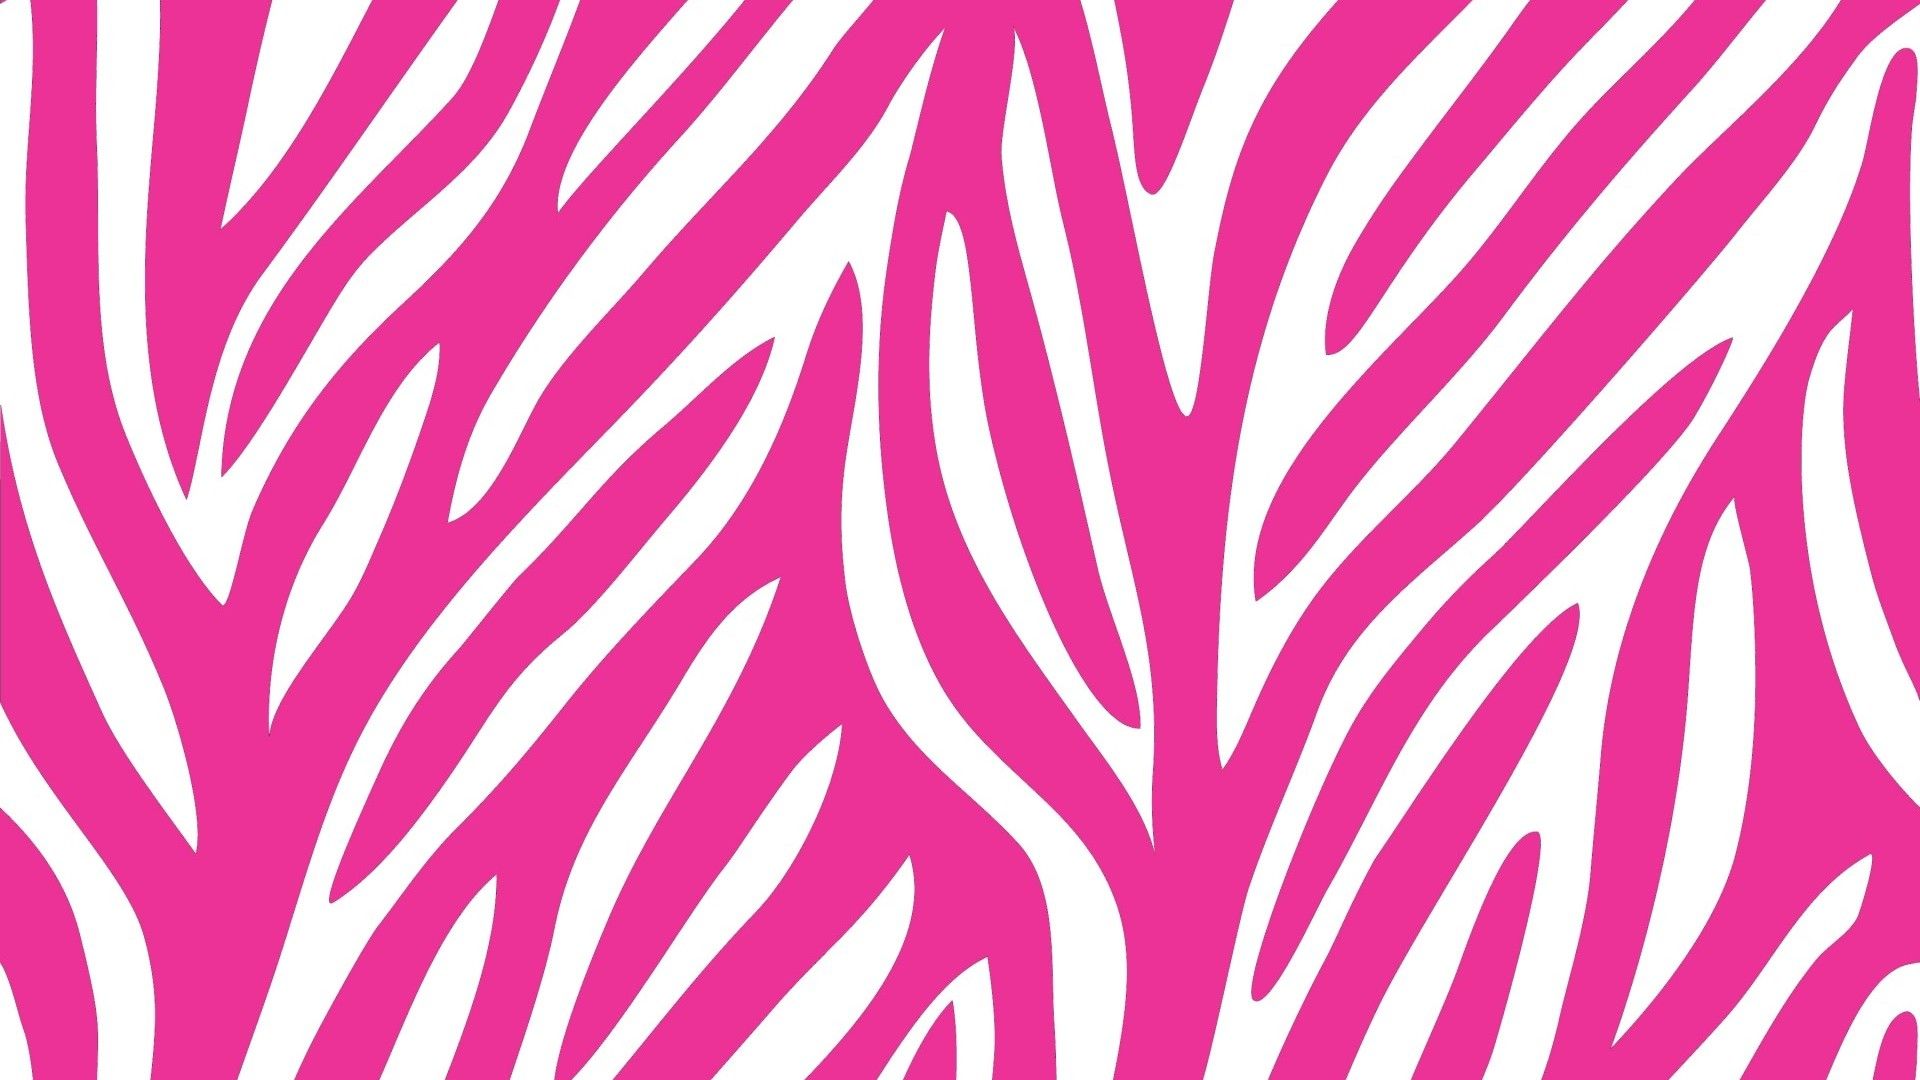 Secret Background. Victoria Secret Pink Wallpaper, Secret Garden Wallpaper and Victoria Secret Pink Background